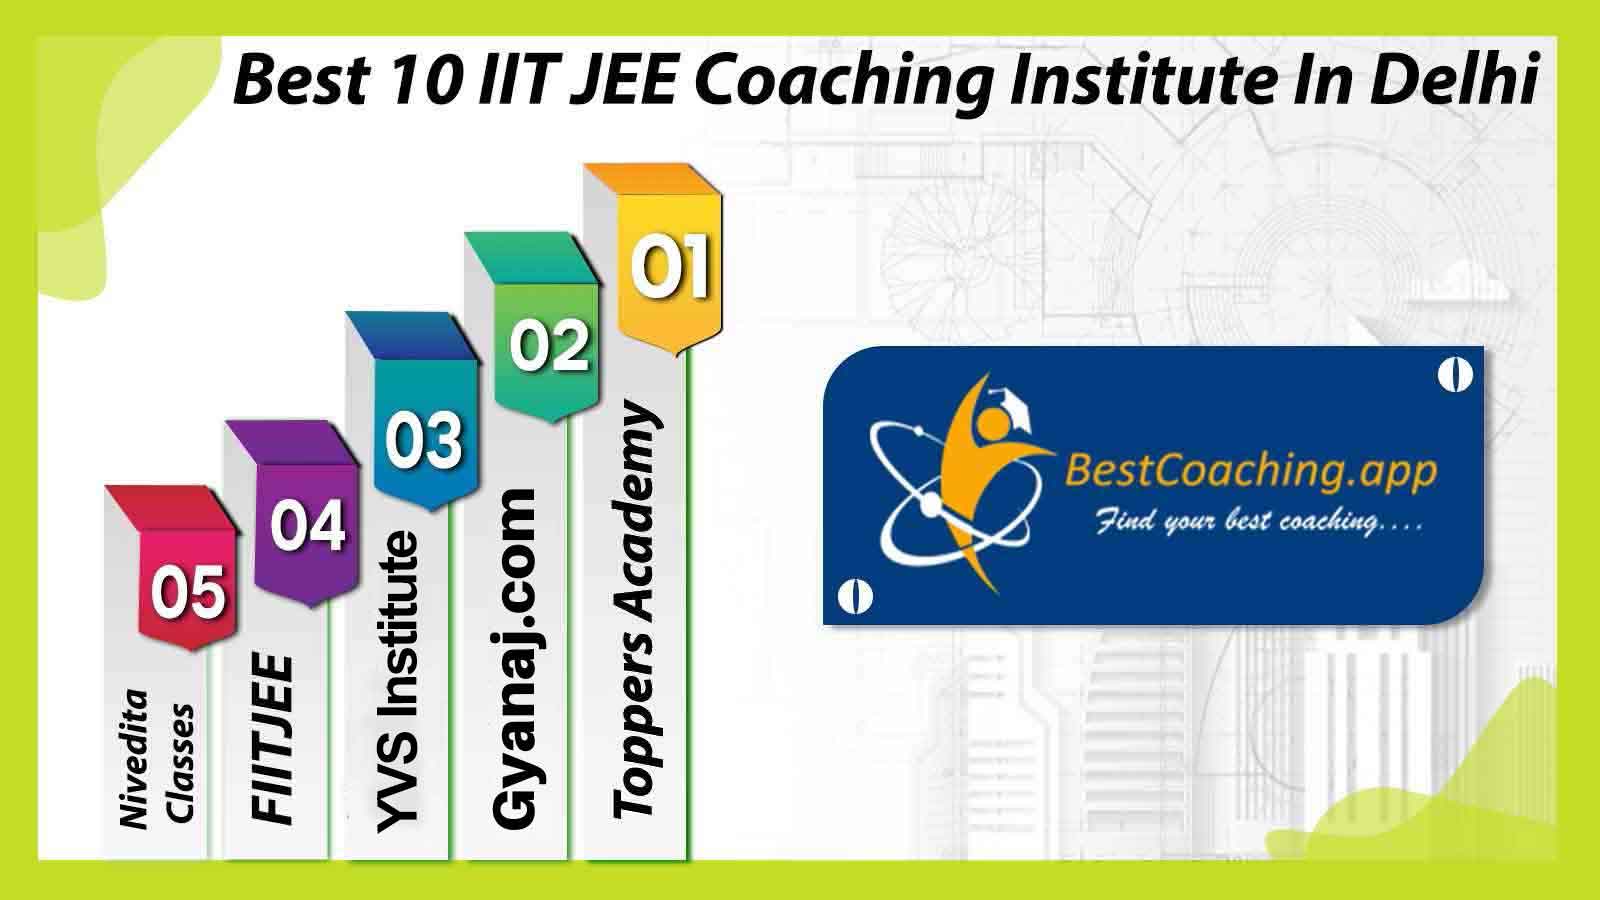 Best IIT JEE Coaching Institute in Delhi